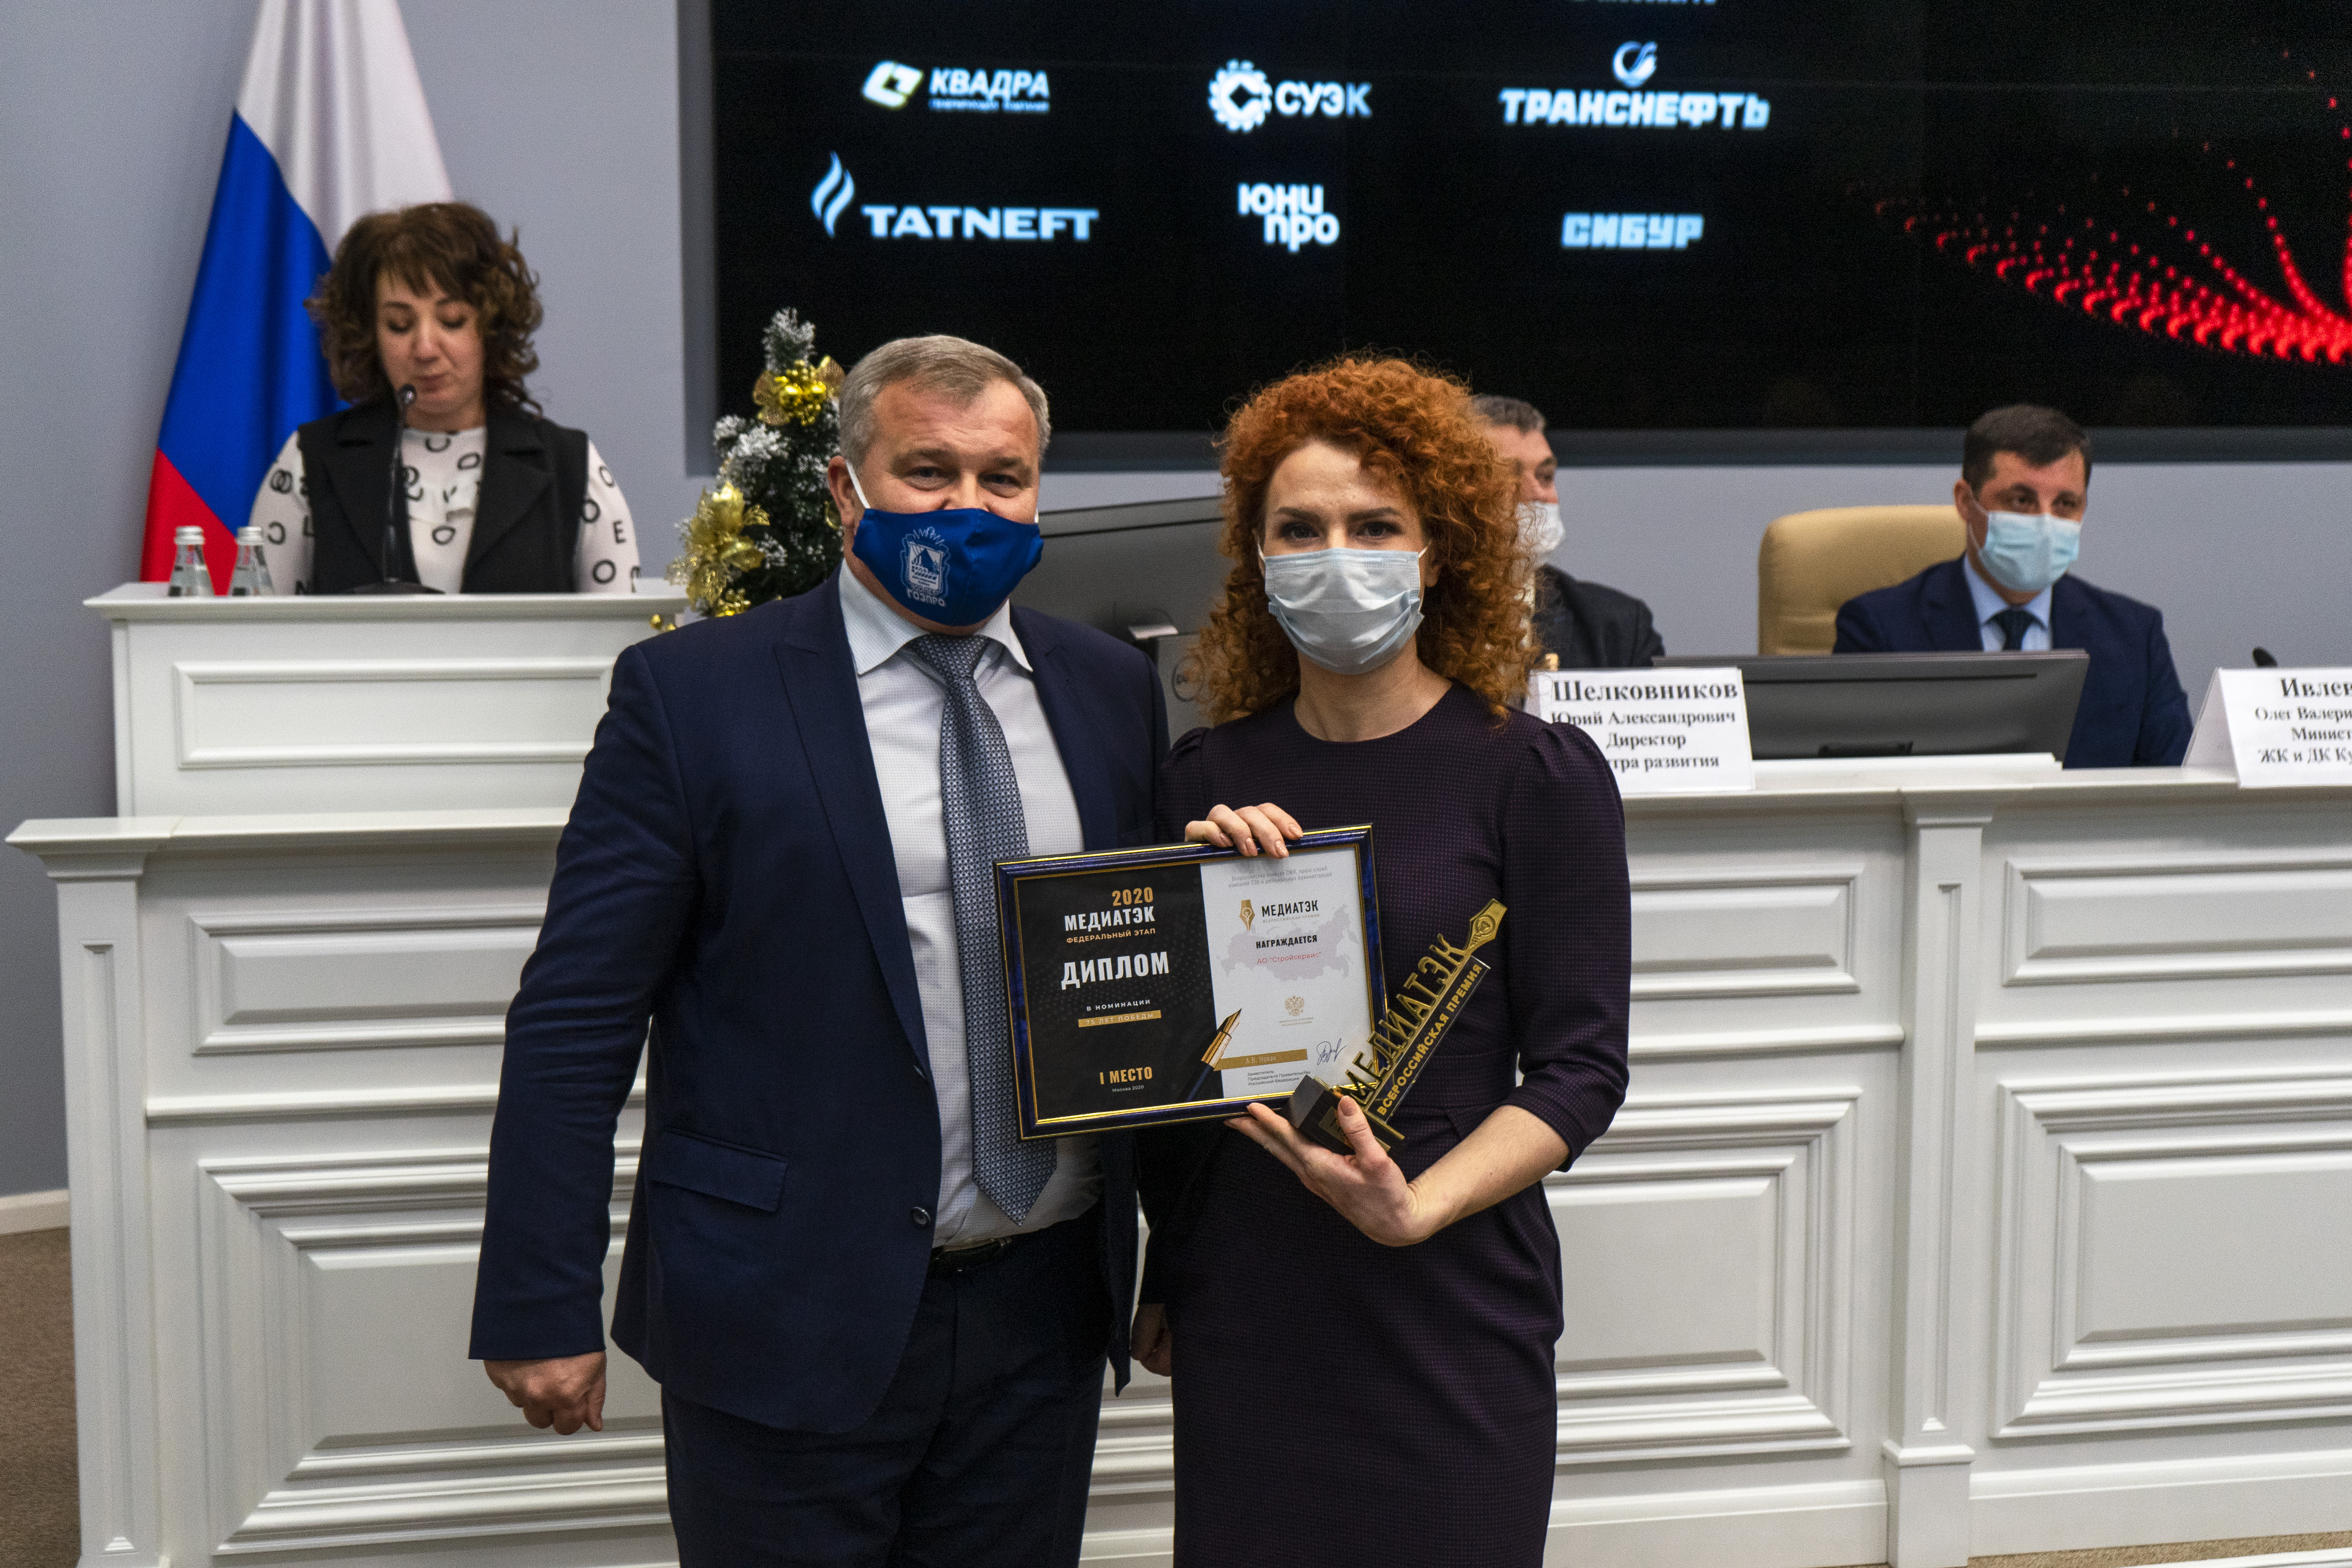 Награда за 1 место во всероссийском конкурсе МедиаТЭК вручена компании АО Стройсервис. Стройсервис